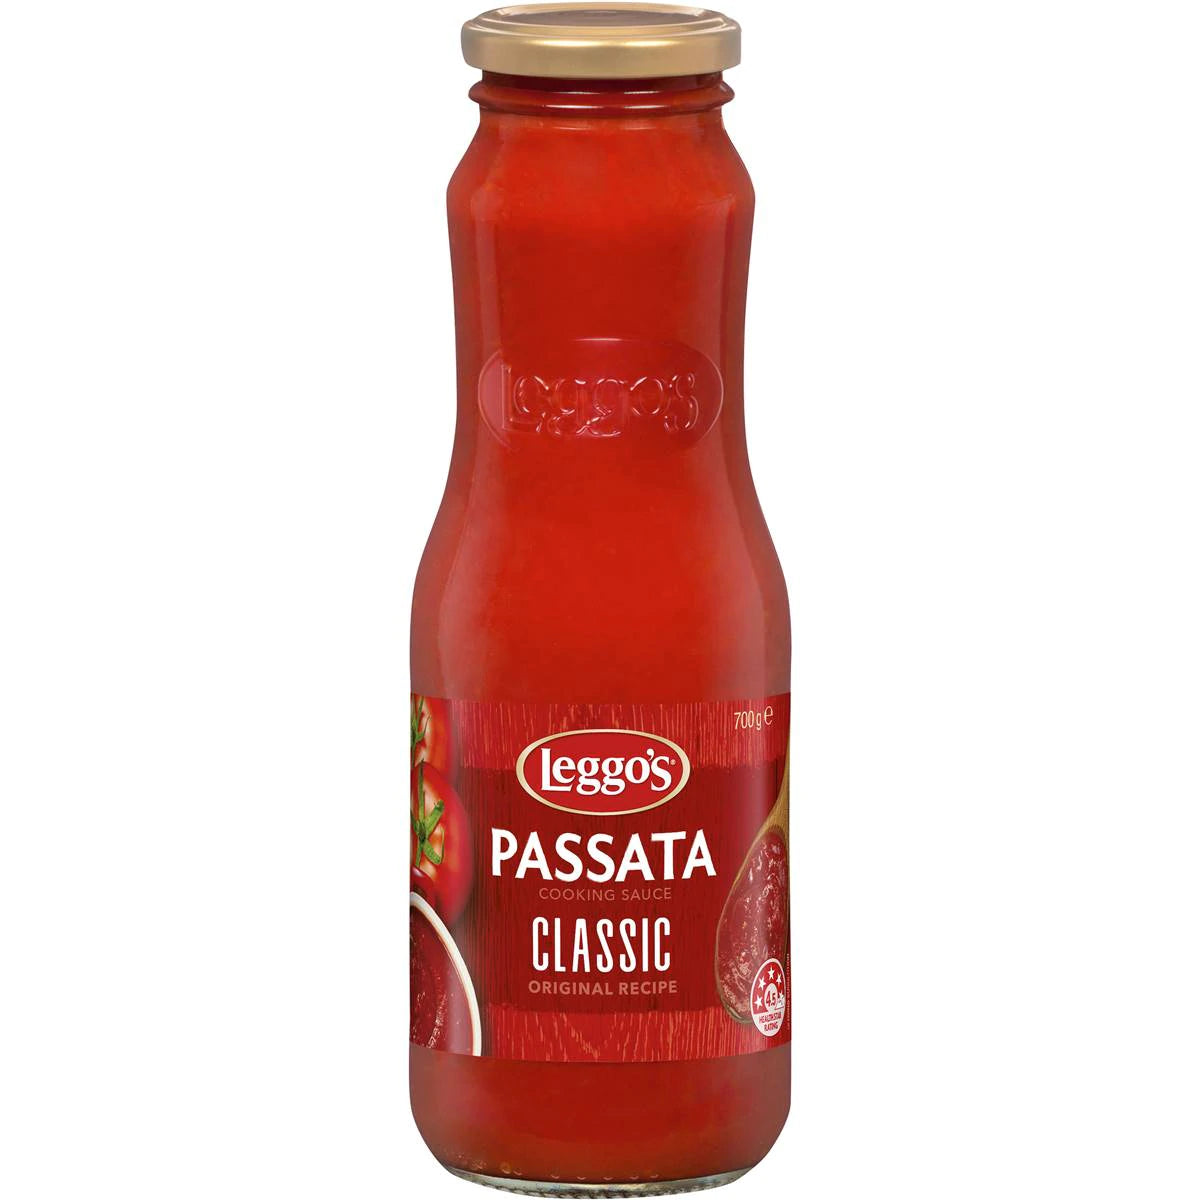 Leggos Passata Classic Tomato 700g